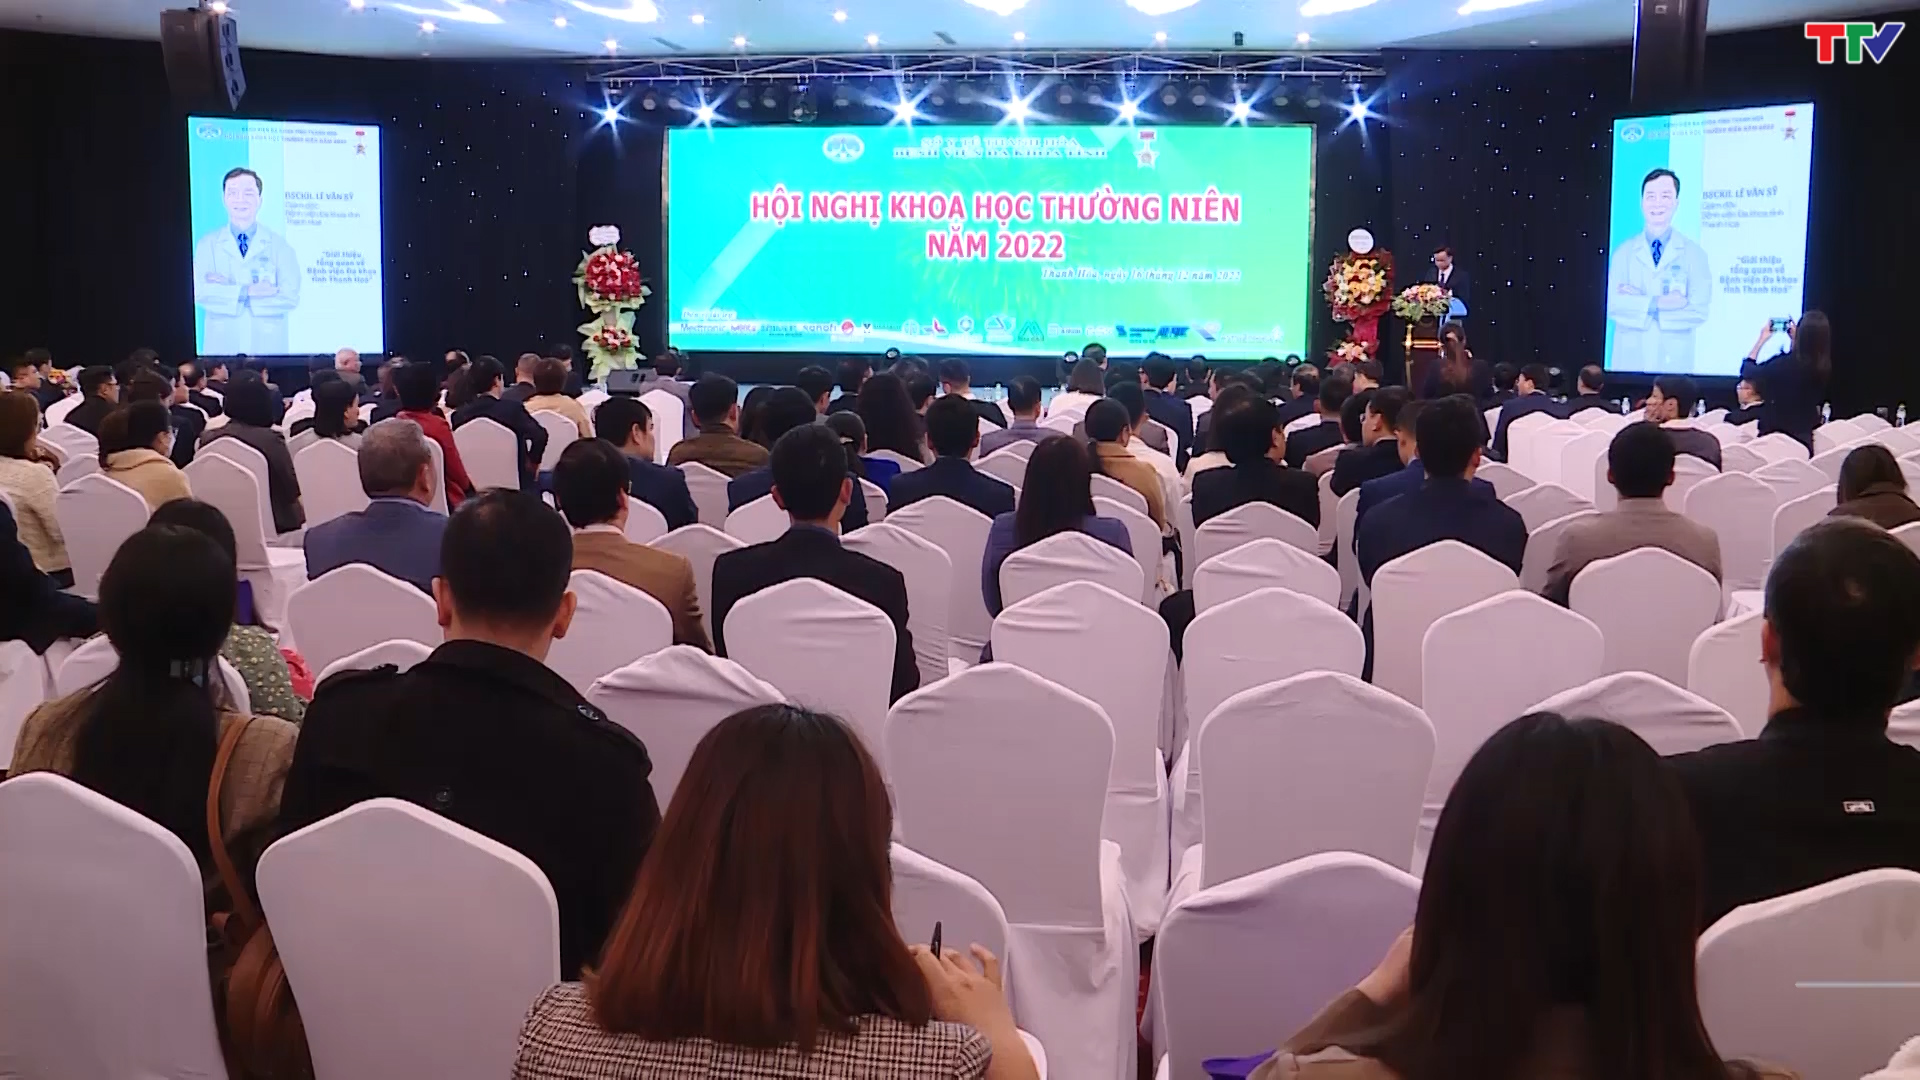 Bệnh viện Đa khoa tỉnh Thanh Hoá tổ chức hội nghị khoa học thường niên năm 2022 - Ảnh 4.